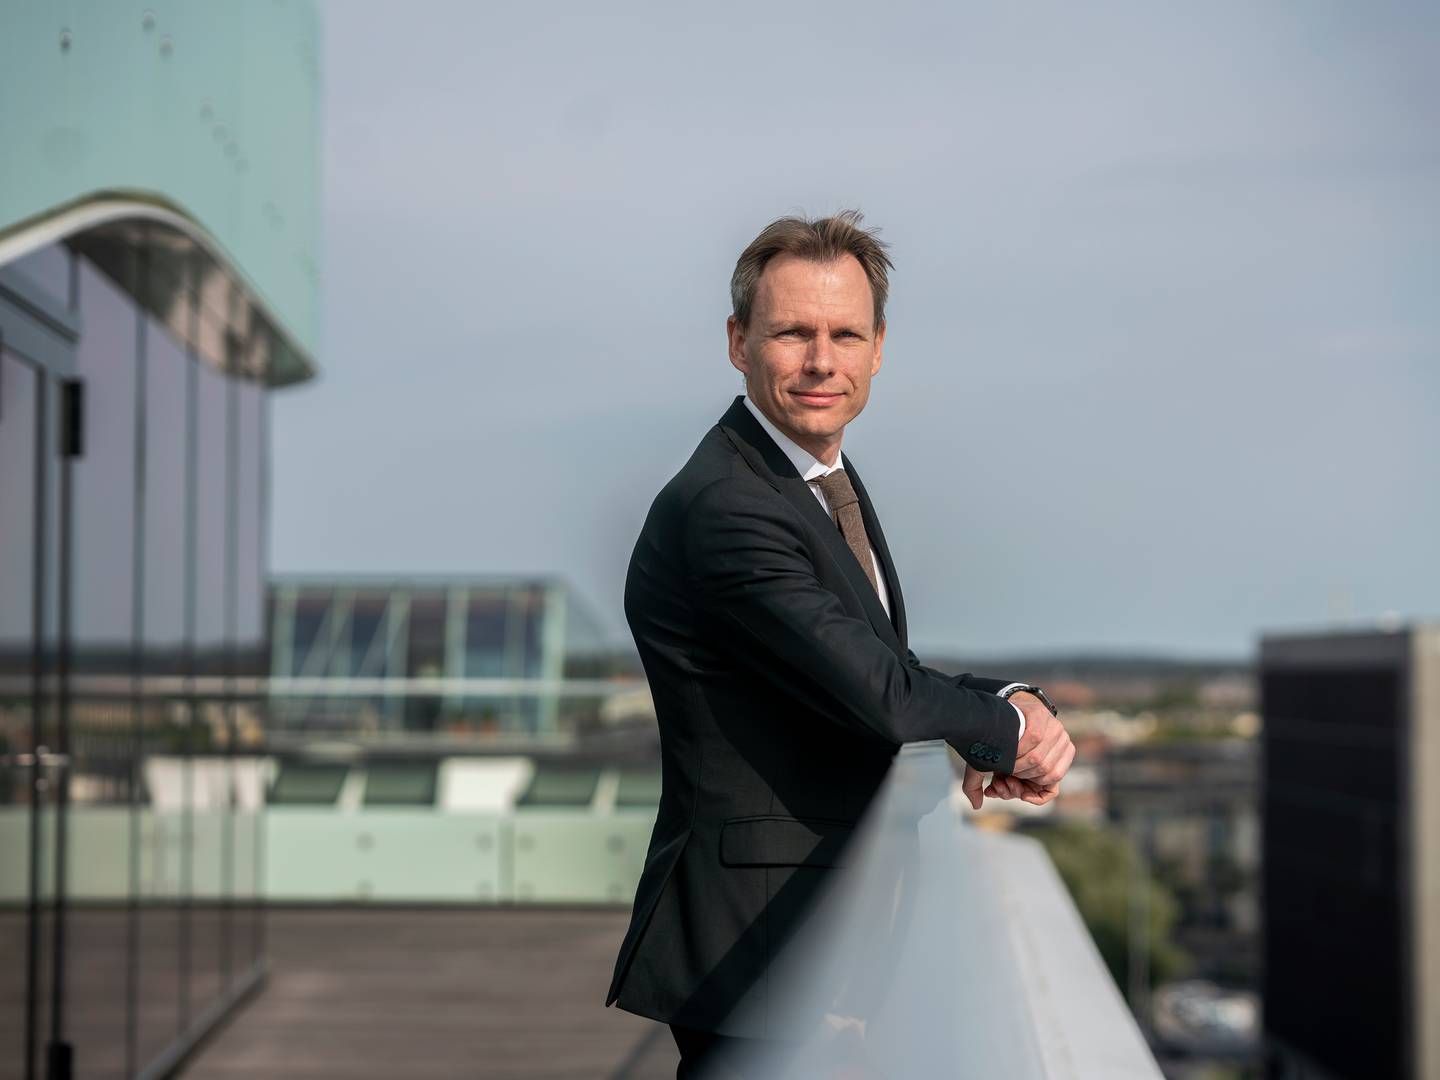 Adm. direktør i brancheorganisationen F&P, Kent Damsgaard, har 27 konkrete forslag til en fremtidig finanslov. | Foto: Stine Bidstrup